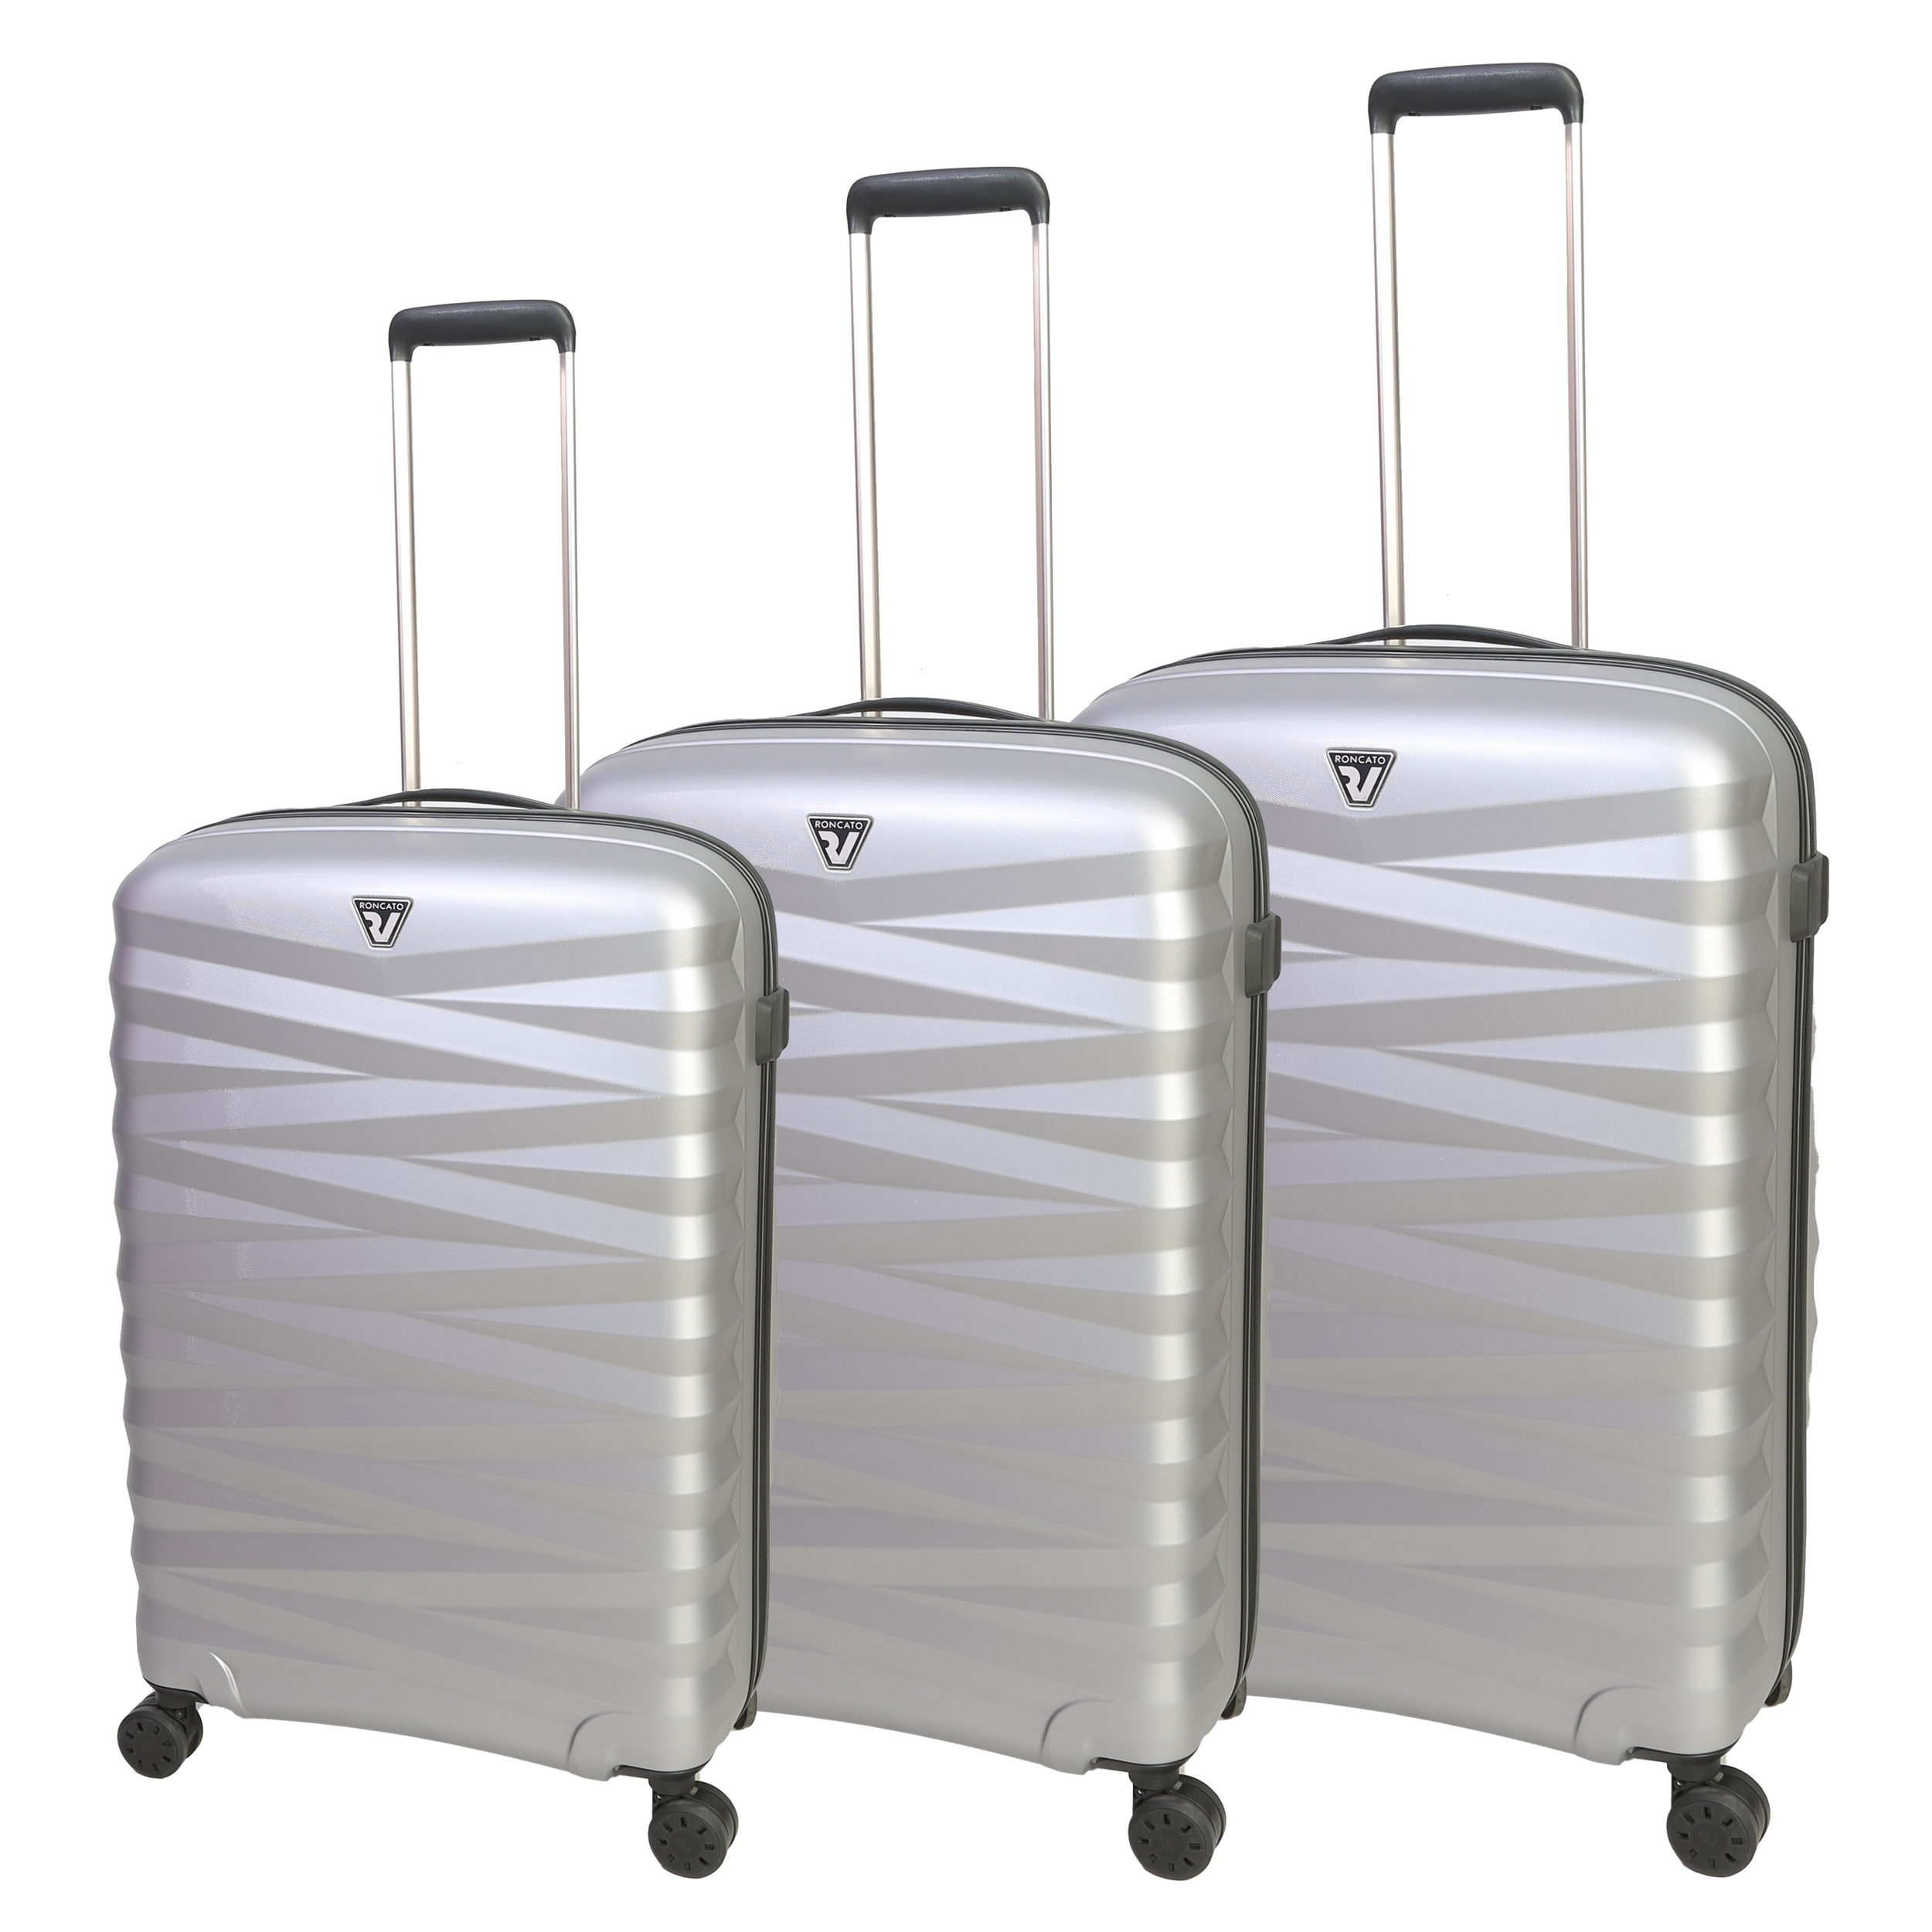 نکته خرید - قیمت روز مجموعه سه عددی چمدان رونکاتو مدل ZETA خرید